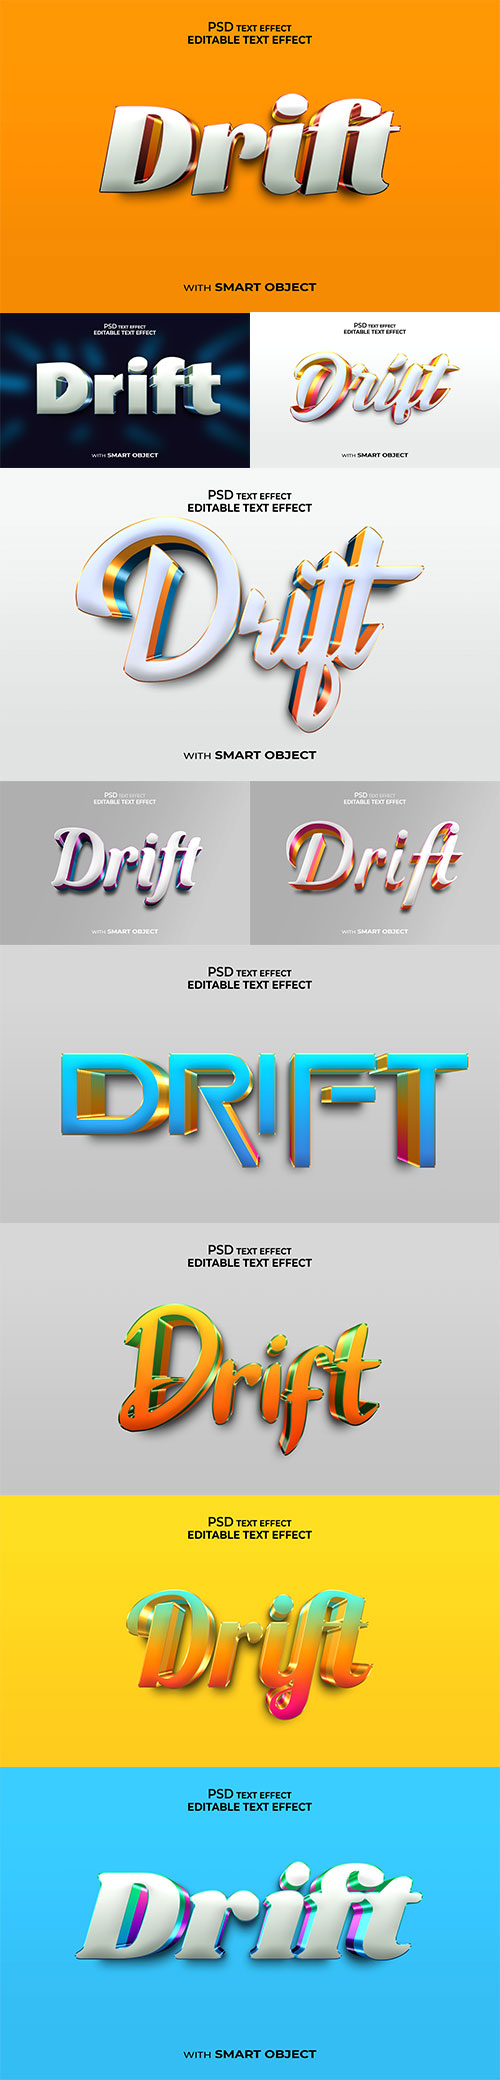 Drift Psd text effect set vol 579